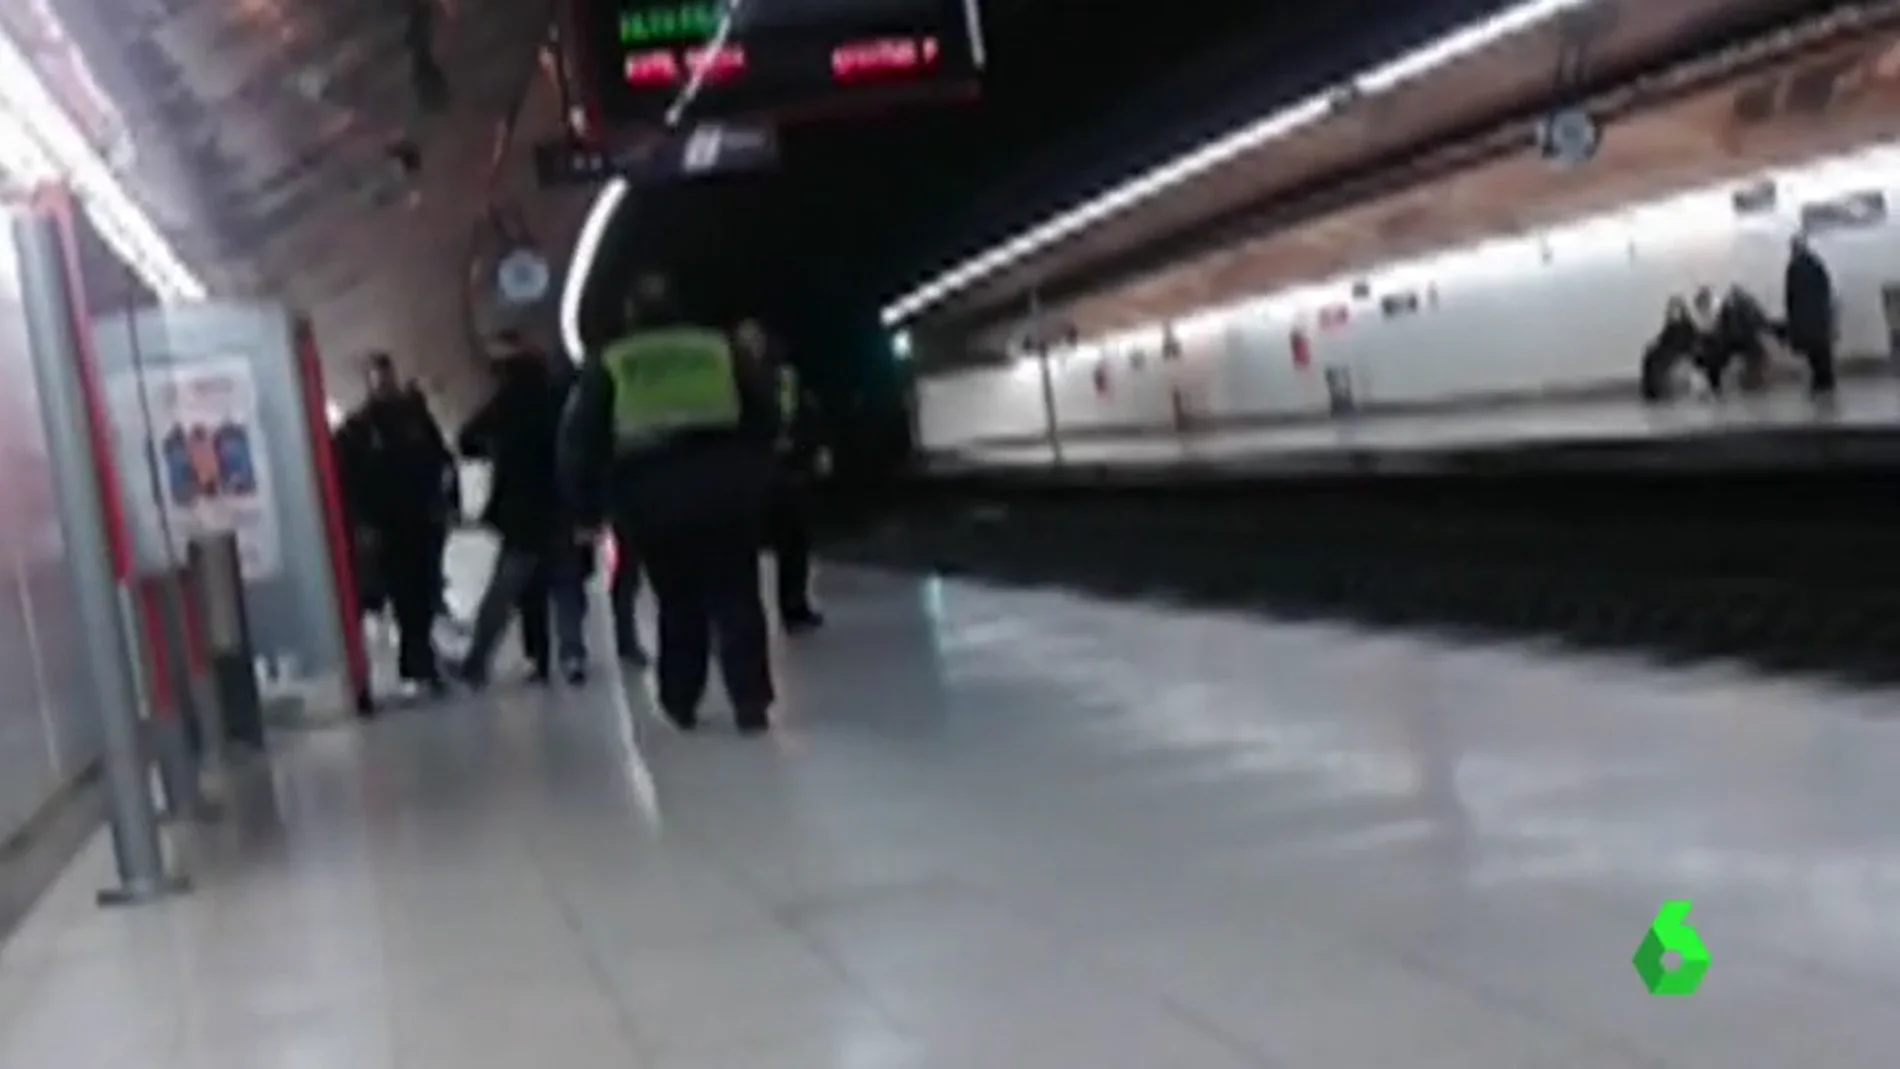  20 años de cárcel para el joven que arrojó a un policía a las vías del metro de Madrid